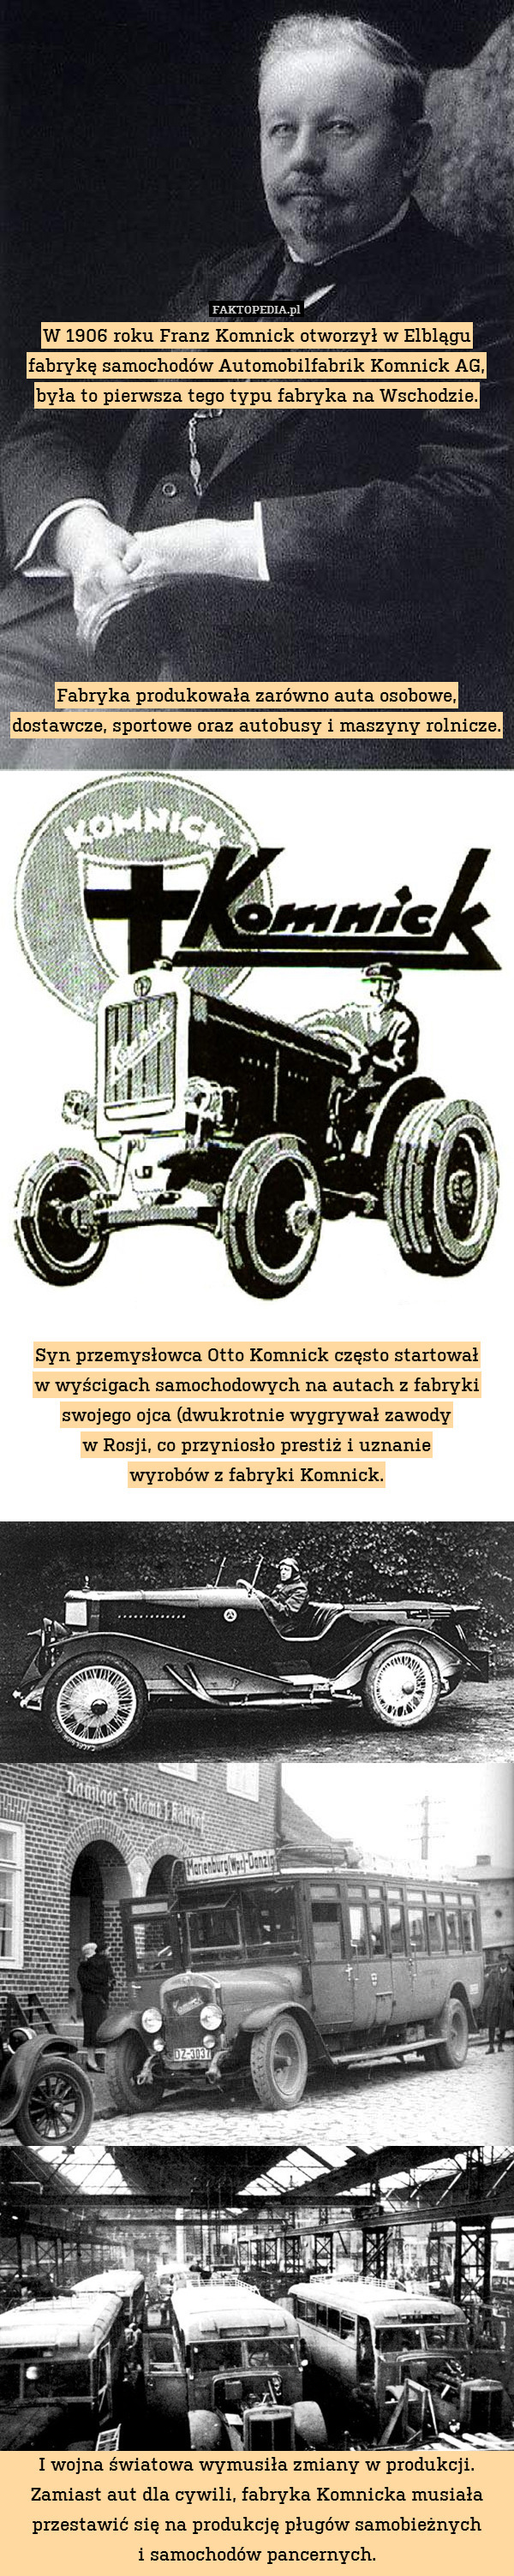 W 1906 roku Franz Komnick otworzył